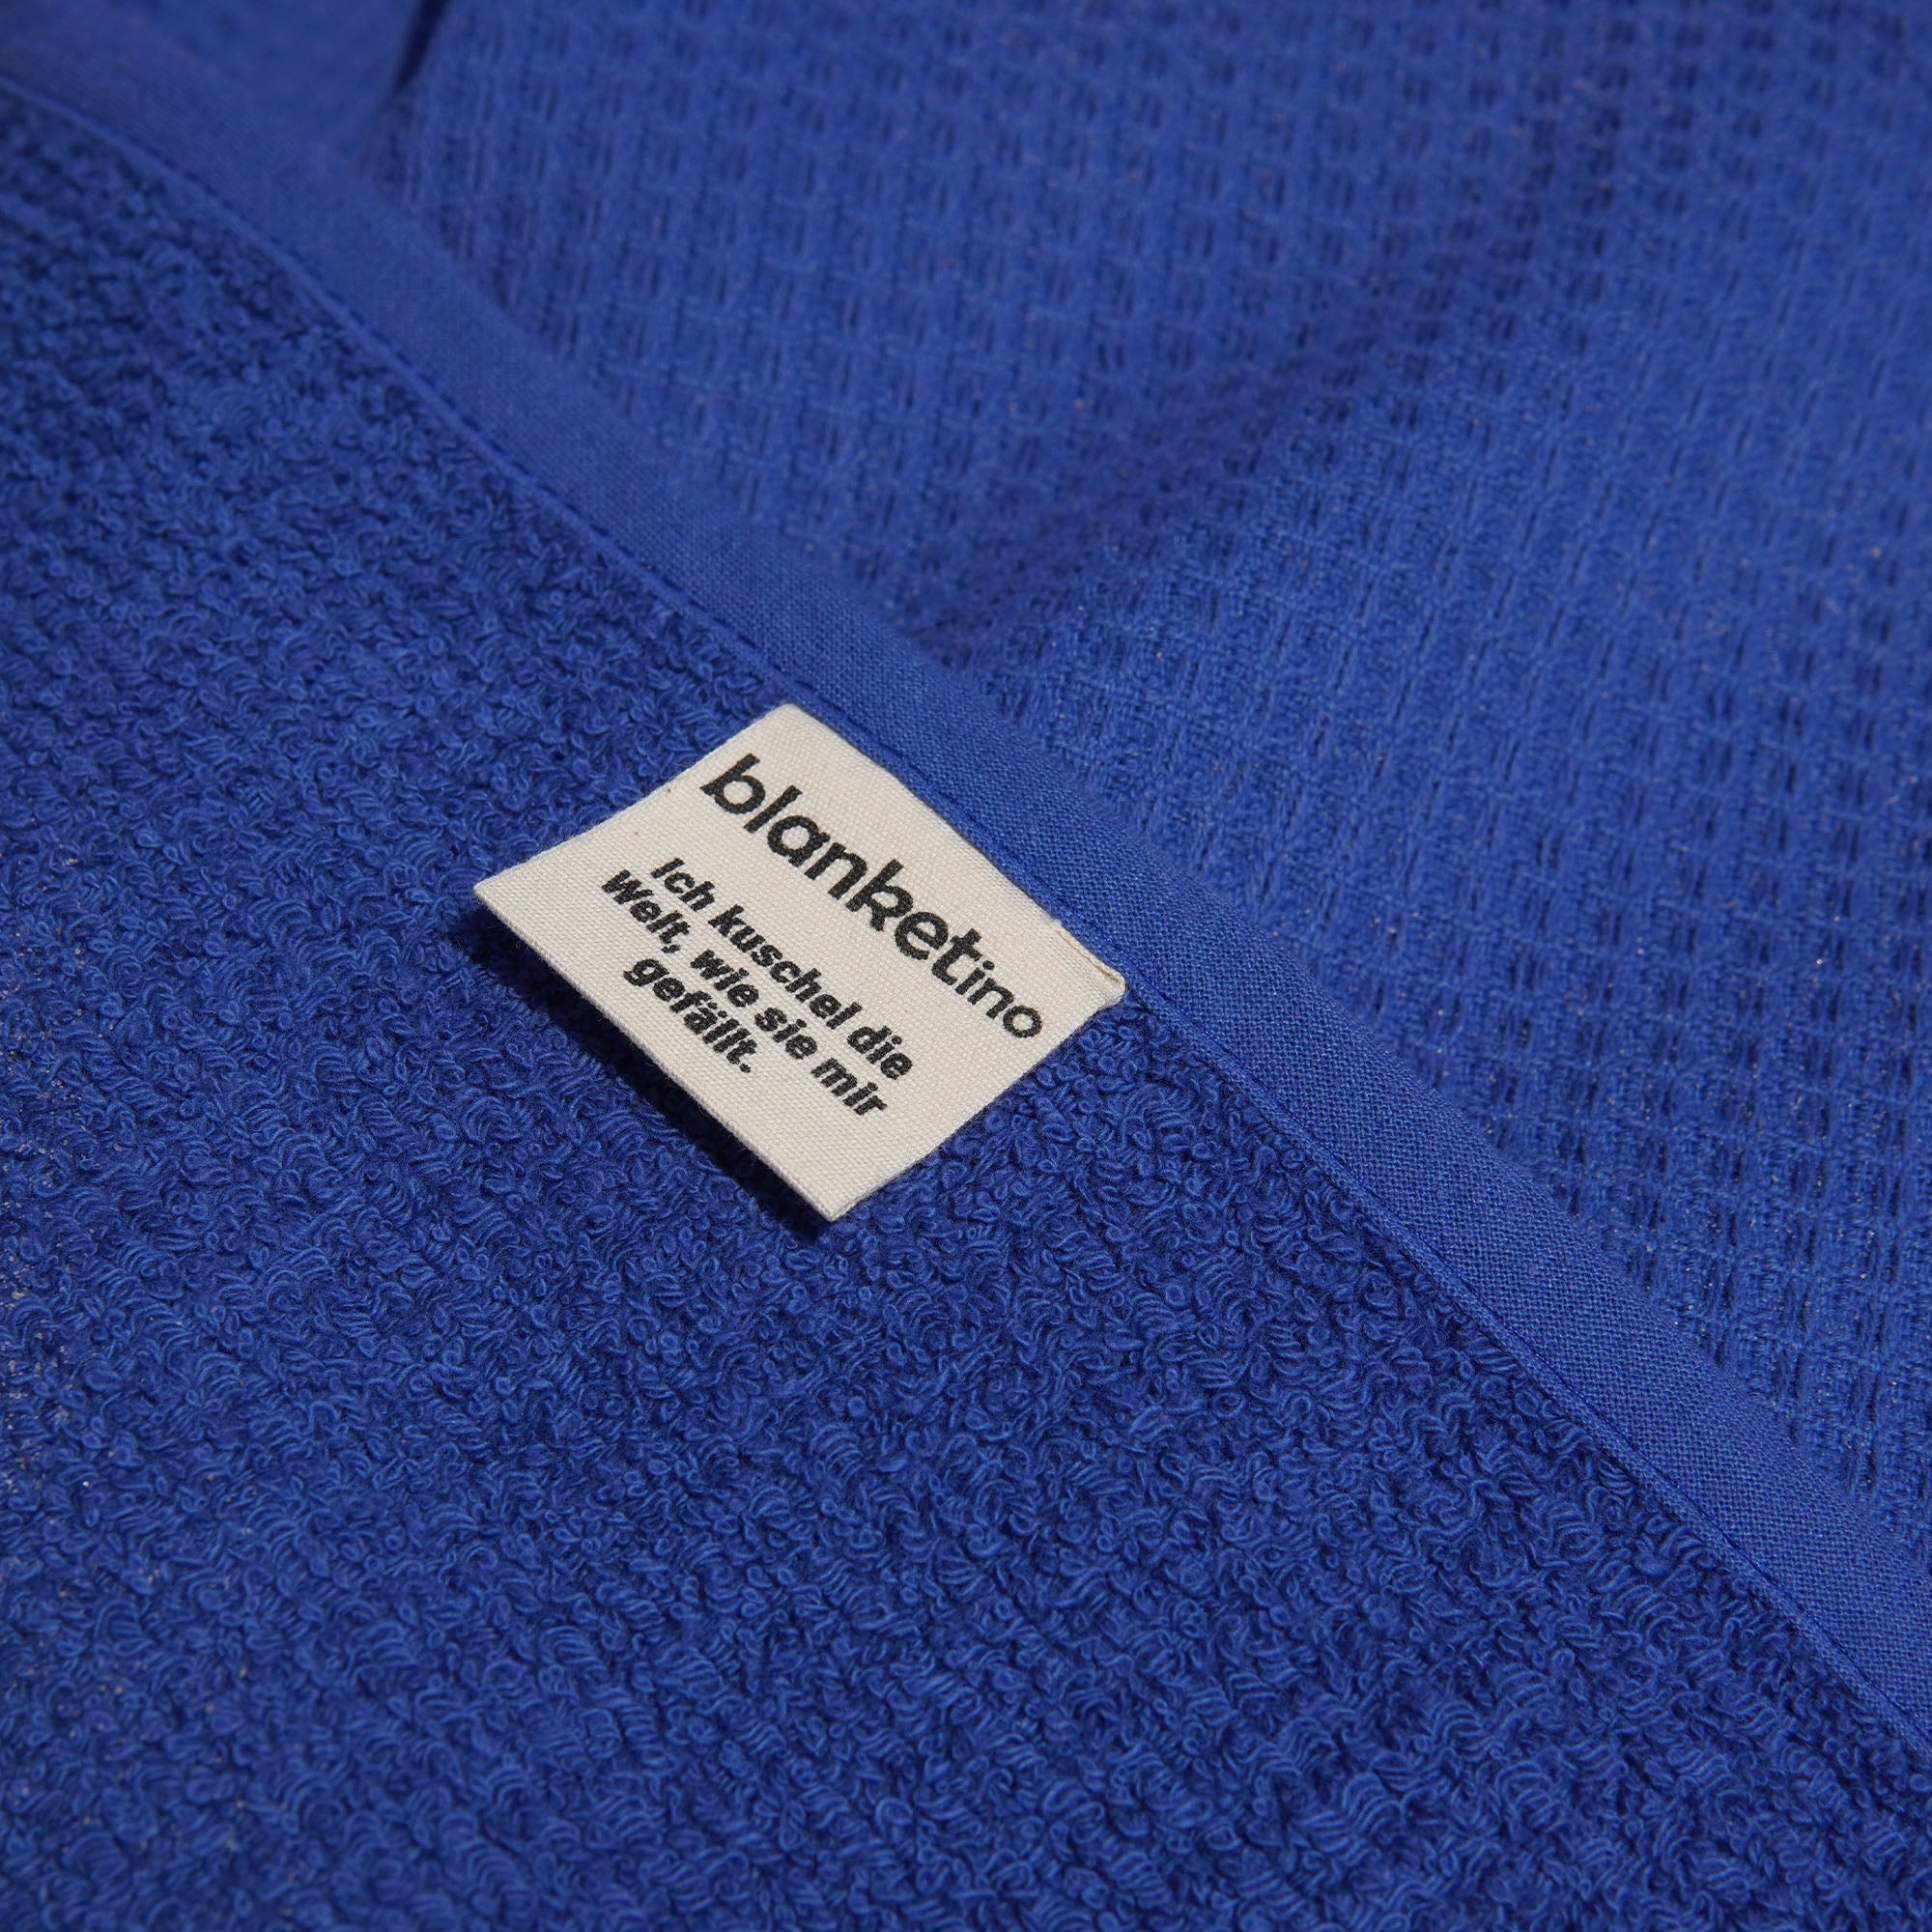 Strandhandtuch XL aus 100% Baumwolle • 145 x 200 cm • Azurblau